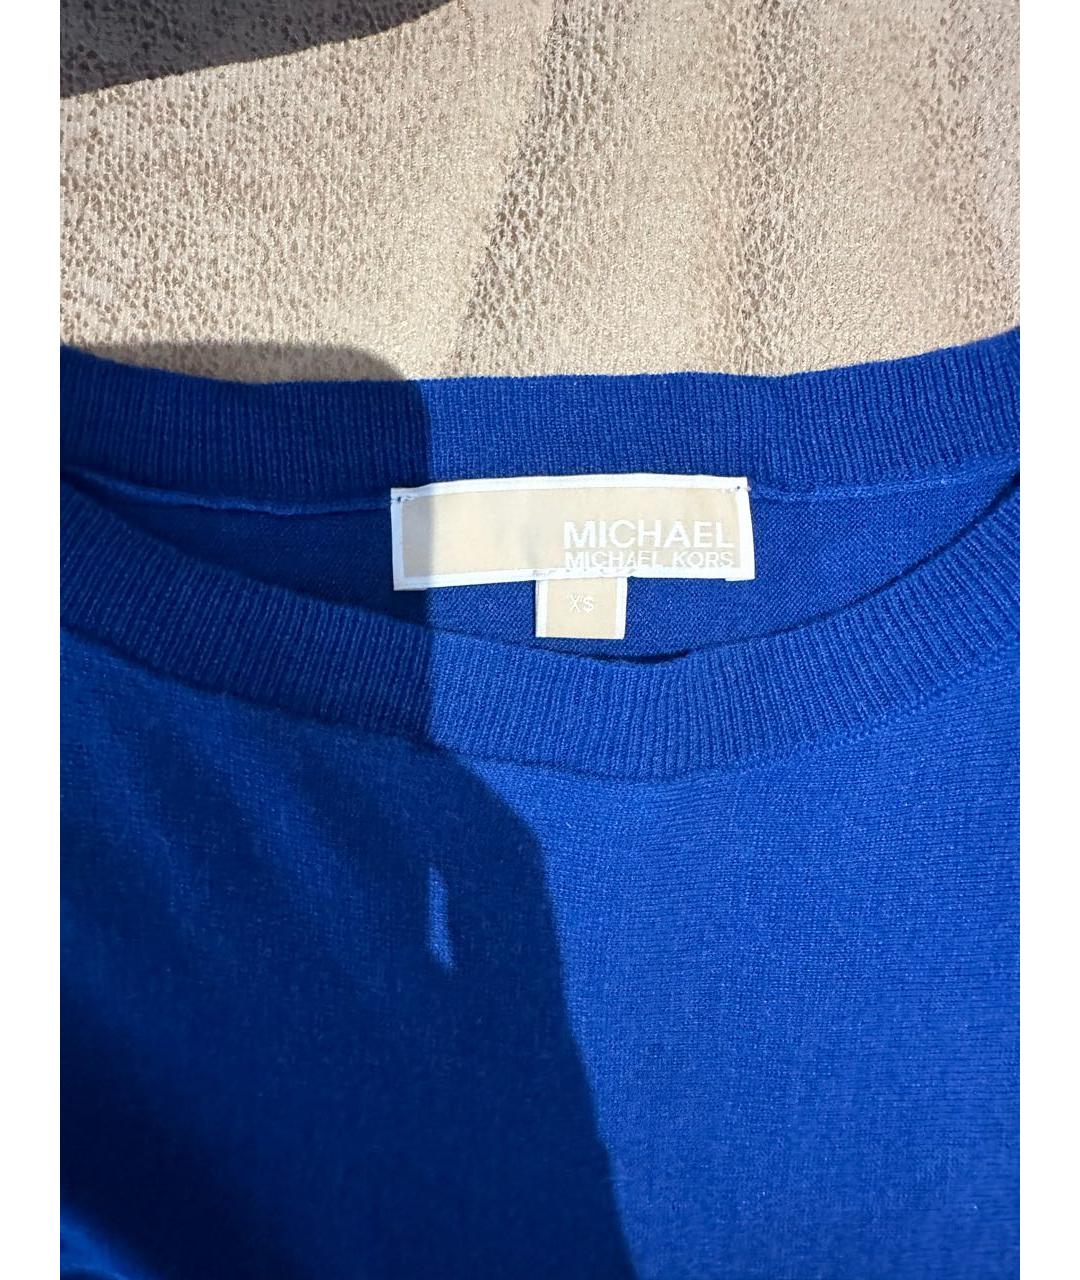 MICHAEL KORS Синий кашемировый джемпер / свитер, фото 2